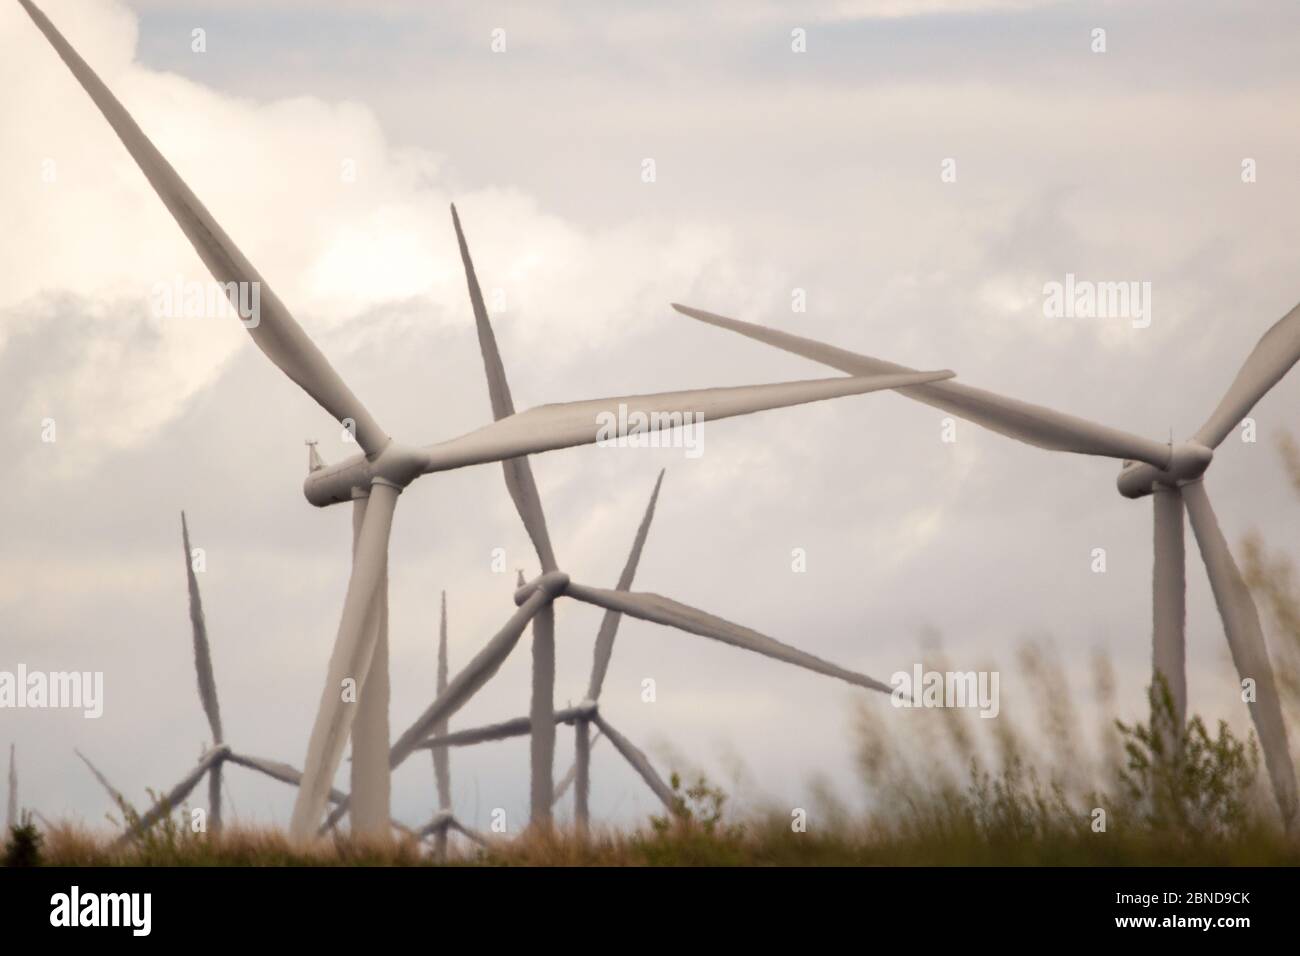 Whitelee Windfarm, Escocia, Reino Unido. 14 de mayo de 2020. Imagen: Propiedad de Scottish Power Renewables, el Parque Eólico Whitelee es el parque eólico más grande del Reino Unido con 215 turbinas que generan hasta un total de producción de aa de 539 megavatios de electricidad, suficiente para alimentar a poco menos de 300,000 hogares. Como los gobiernos británico y escocés están planeando una estrategia de salida para el bloqueo del coronavirus (COVID-19), la demanda de un mayor uso de energía debe equilibrarse con las consideraciones y responsabilidades de los planes de cambio climático. Crédito: Colin Fisher/Alamy Live News Foto de stock